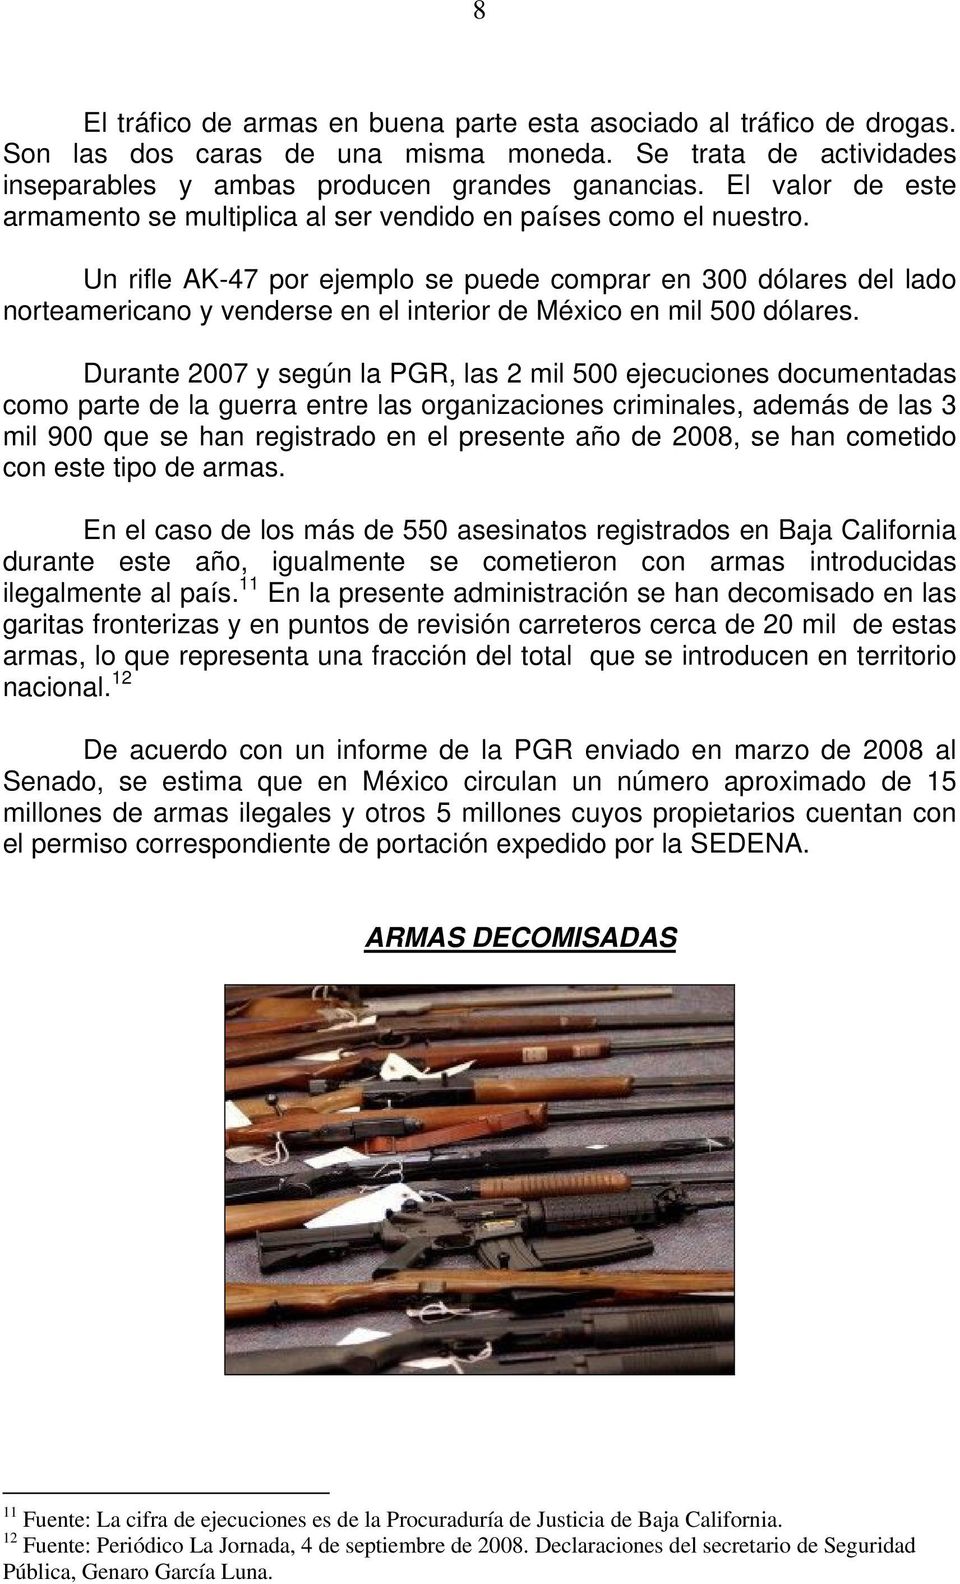 Un rifle AK-47 por ejemplo se puede comprar en 300 dólares del lado norteamericano y venderse en el interior de México en mil 500 dólares.